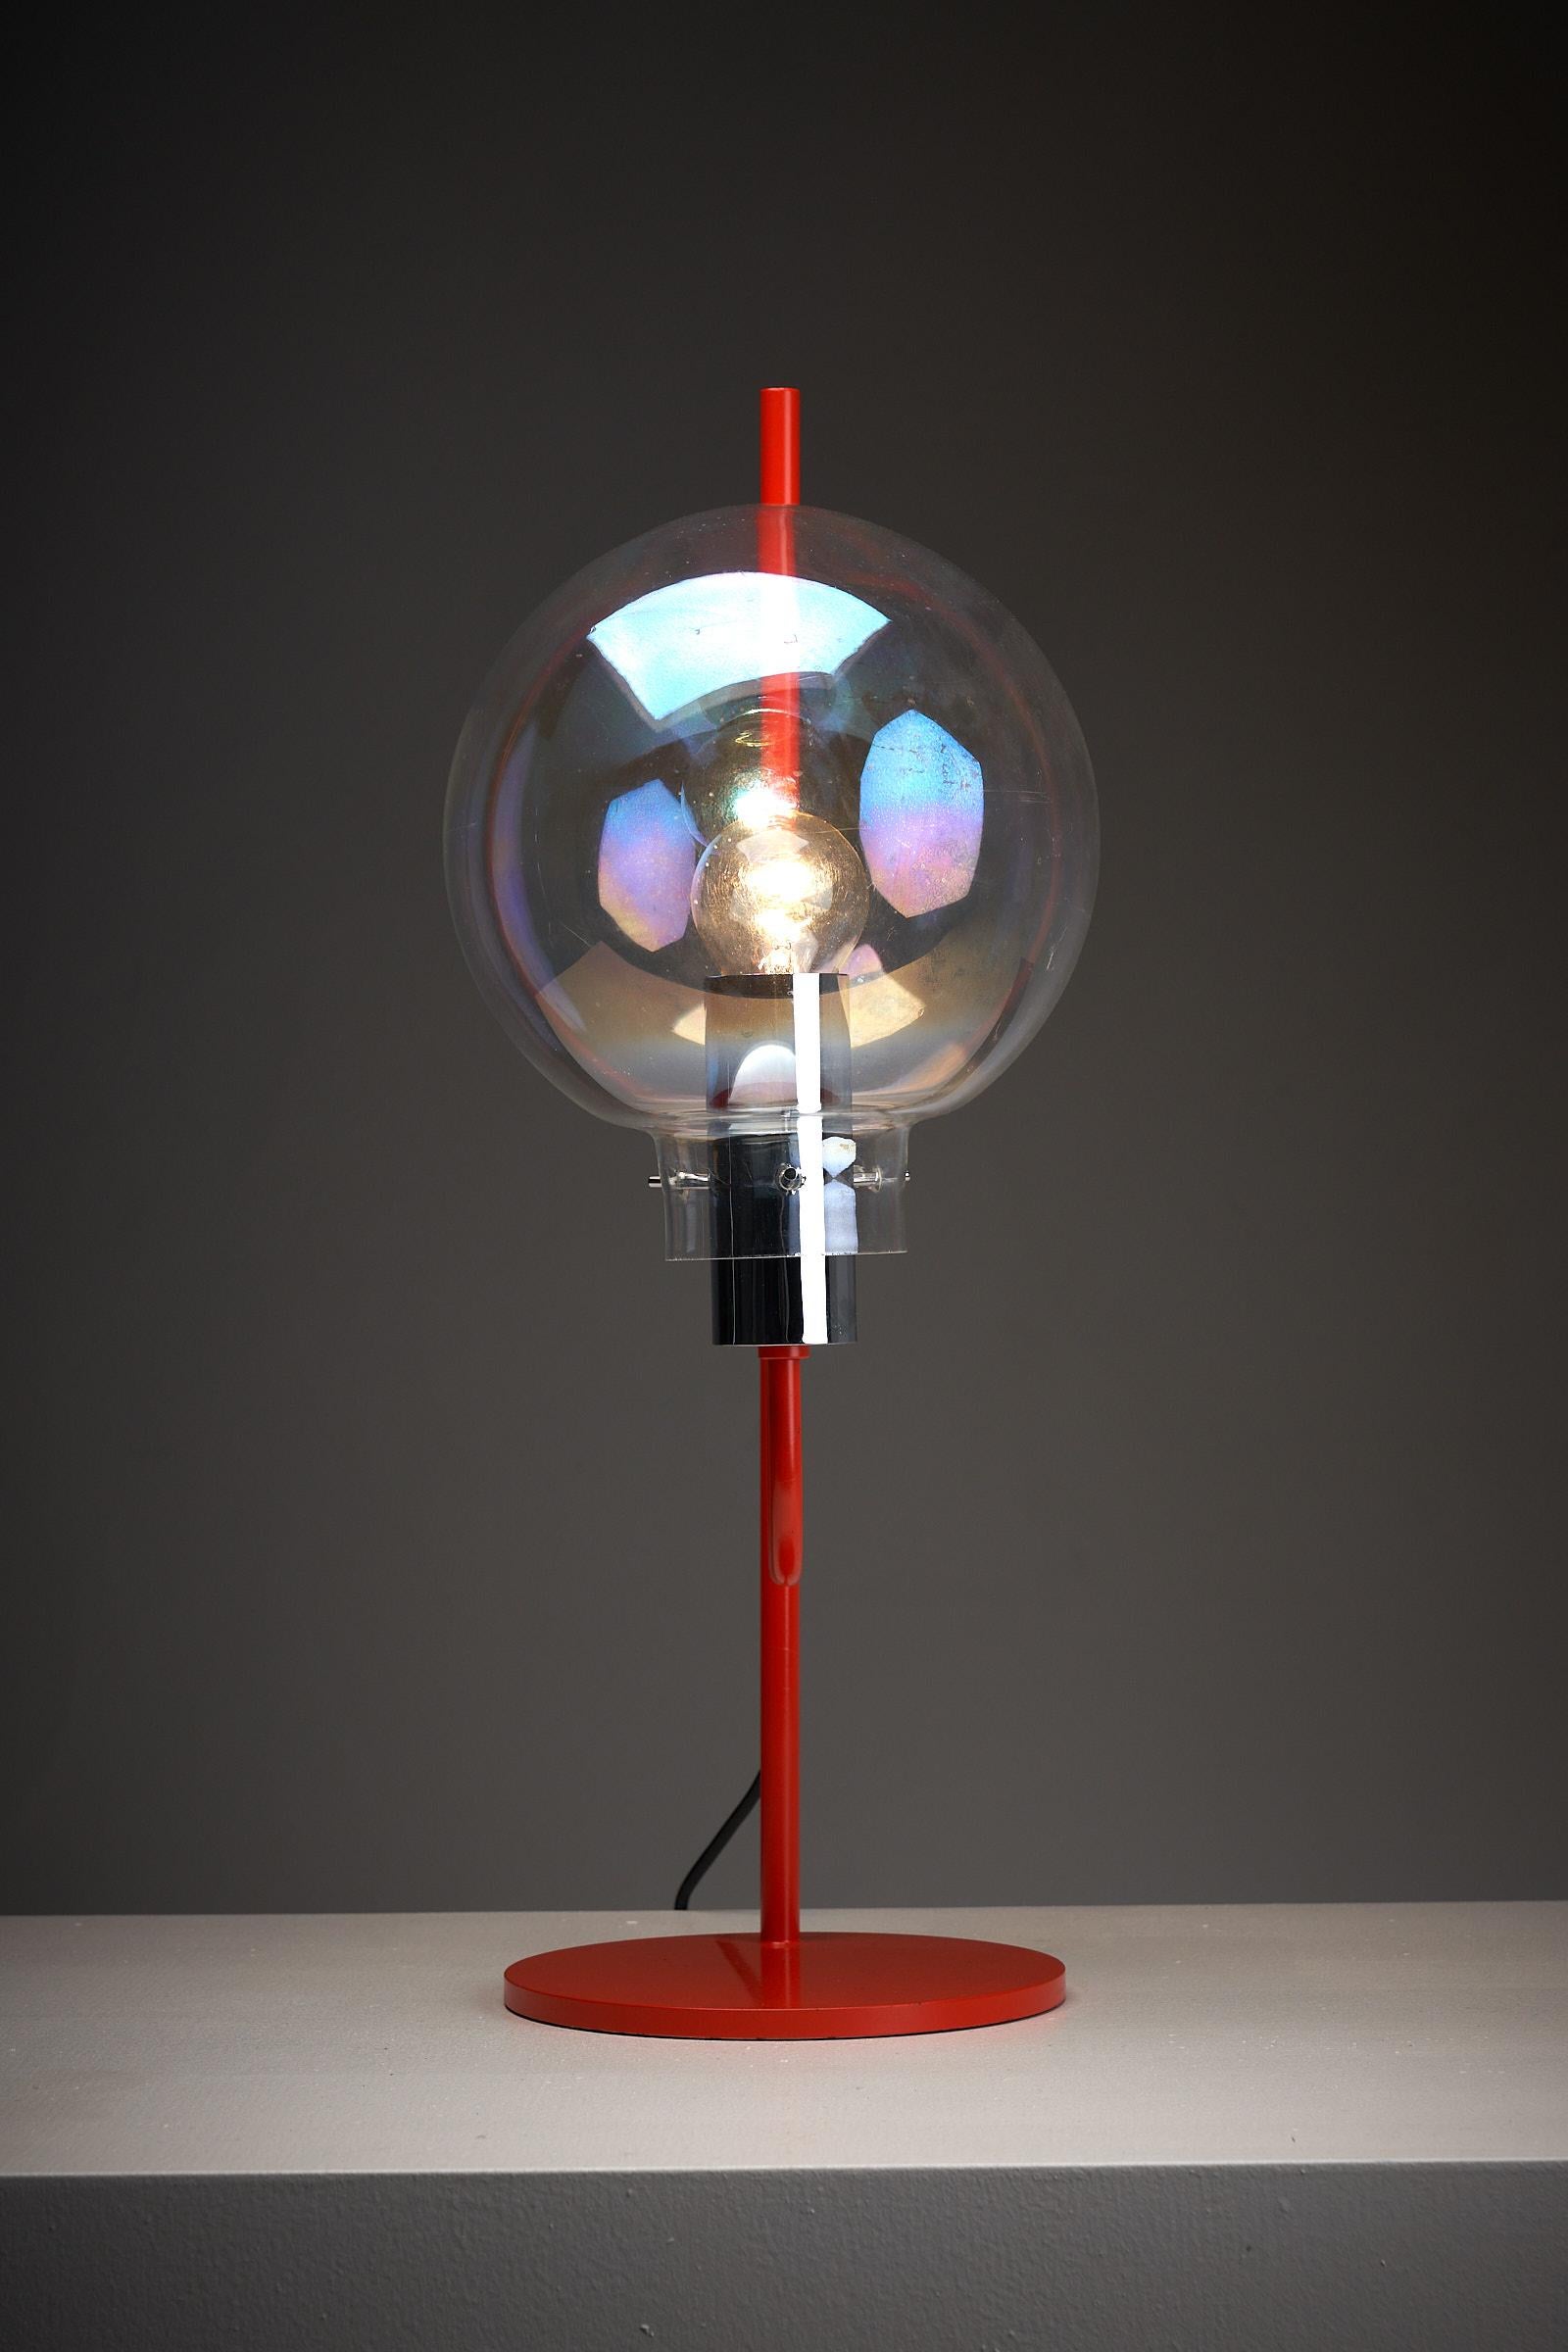 BAG Turgi Tischleuchte 🧡 Mit ihrem leuchtend orange lackierten Rahmen und einer faszinierenden, klar schillernden Glaskugel ist diese Lampe ein wahres Kunstwerk. Modell 192 508 von BAG Turgi, Dokumentation auf Anfrage.